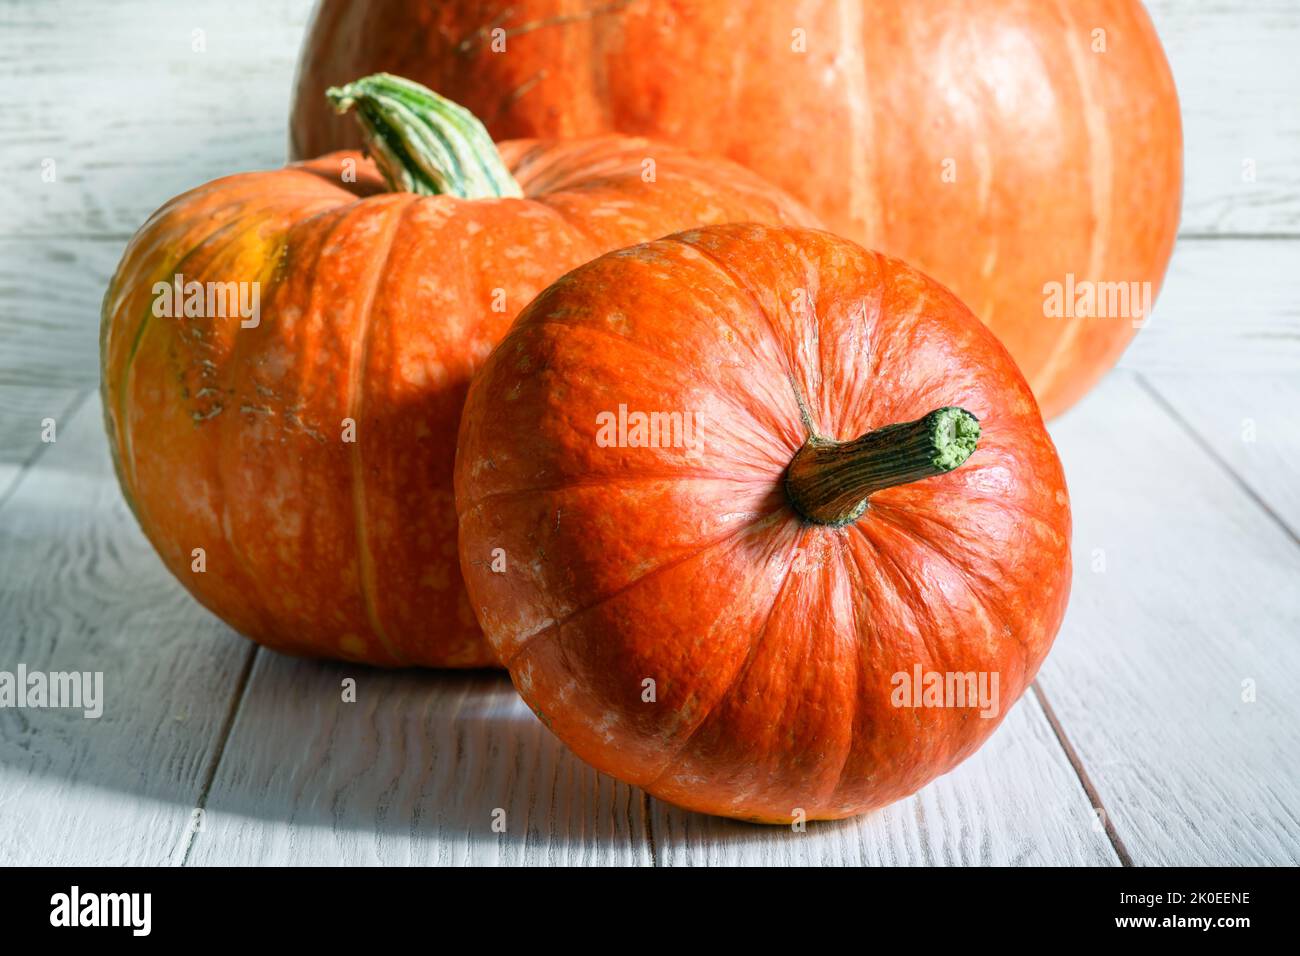 Citrouilles sur table en bois blanc pour le thème de Thanksgiving et d'Halloween. La vie des légumes orange, de la courge entière contre des planches de bois rustiques. Organique Banque D'Images